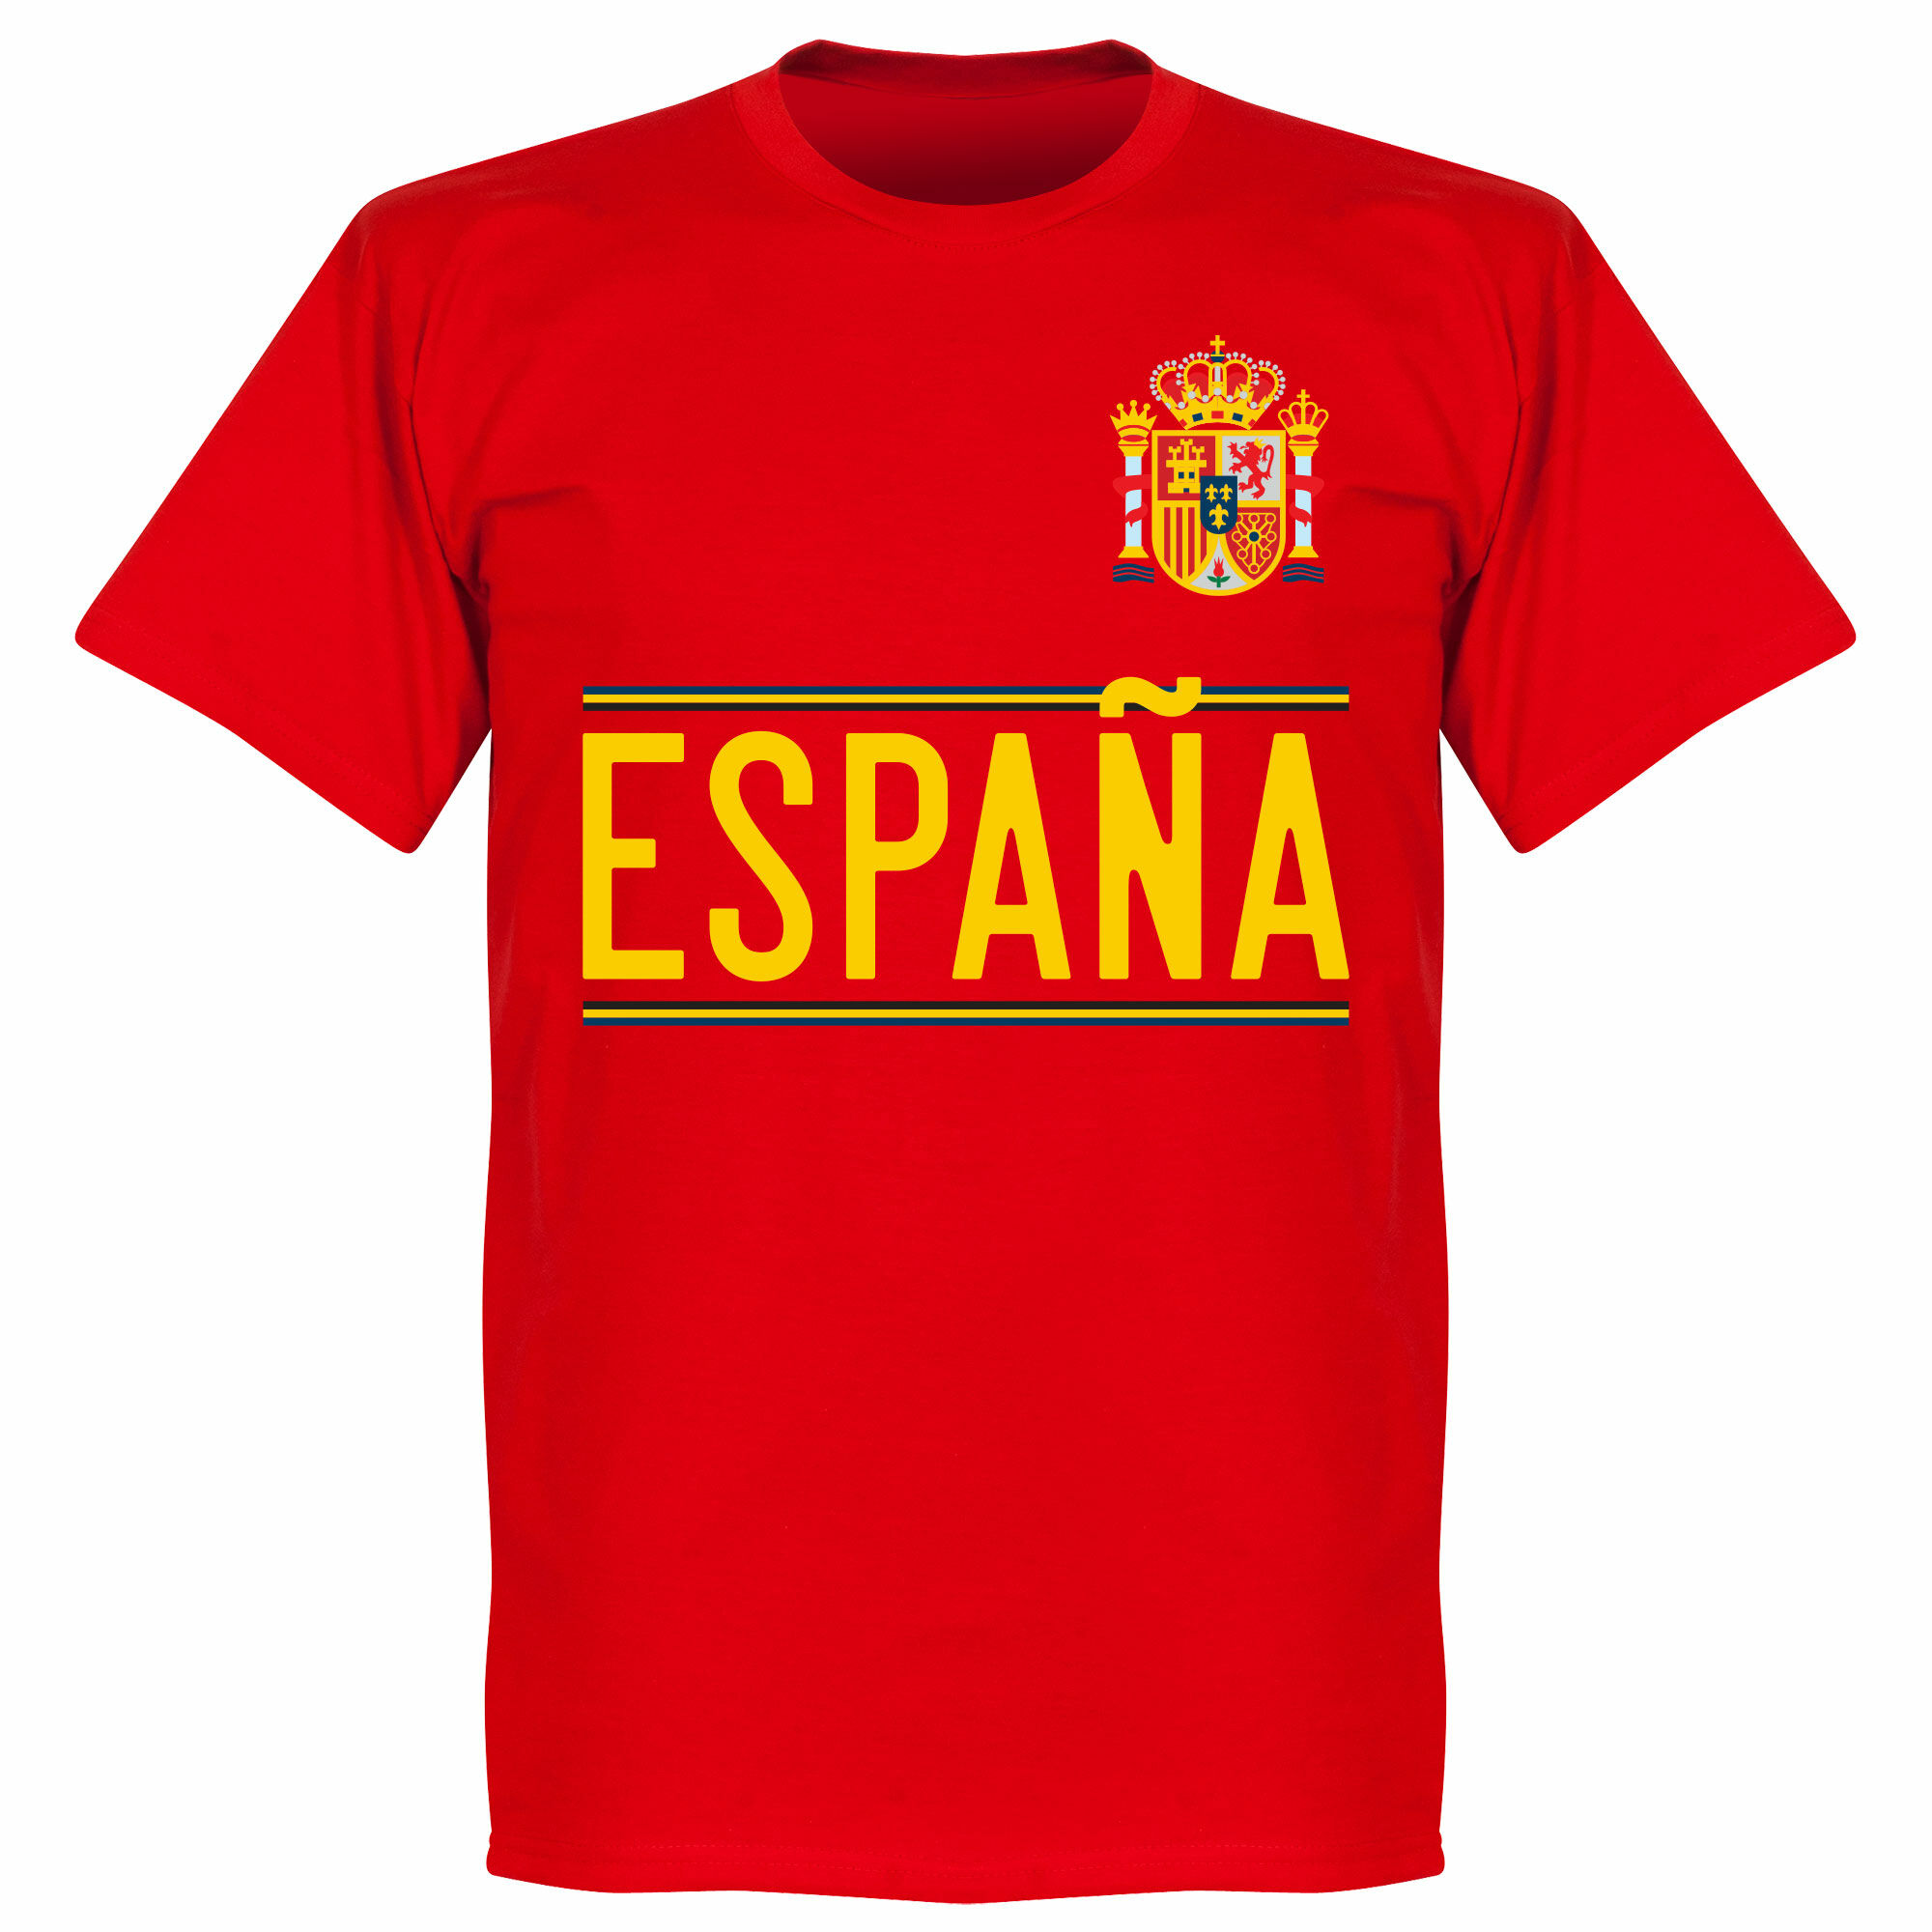 Španělsko - Tričko - červené, 2020